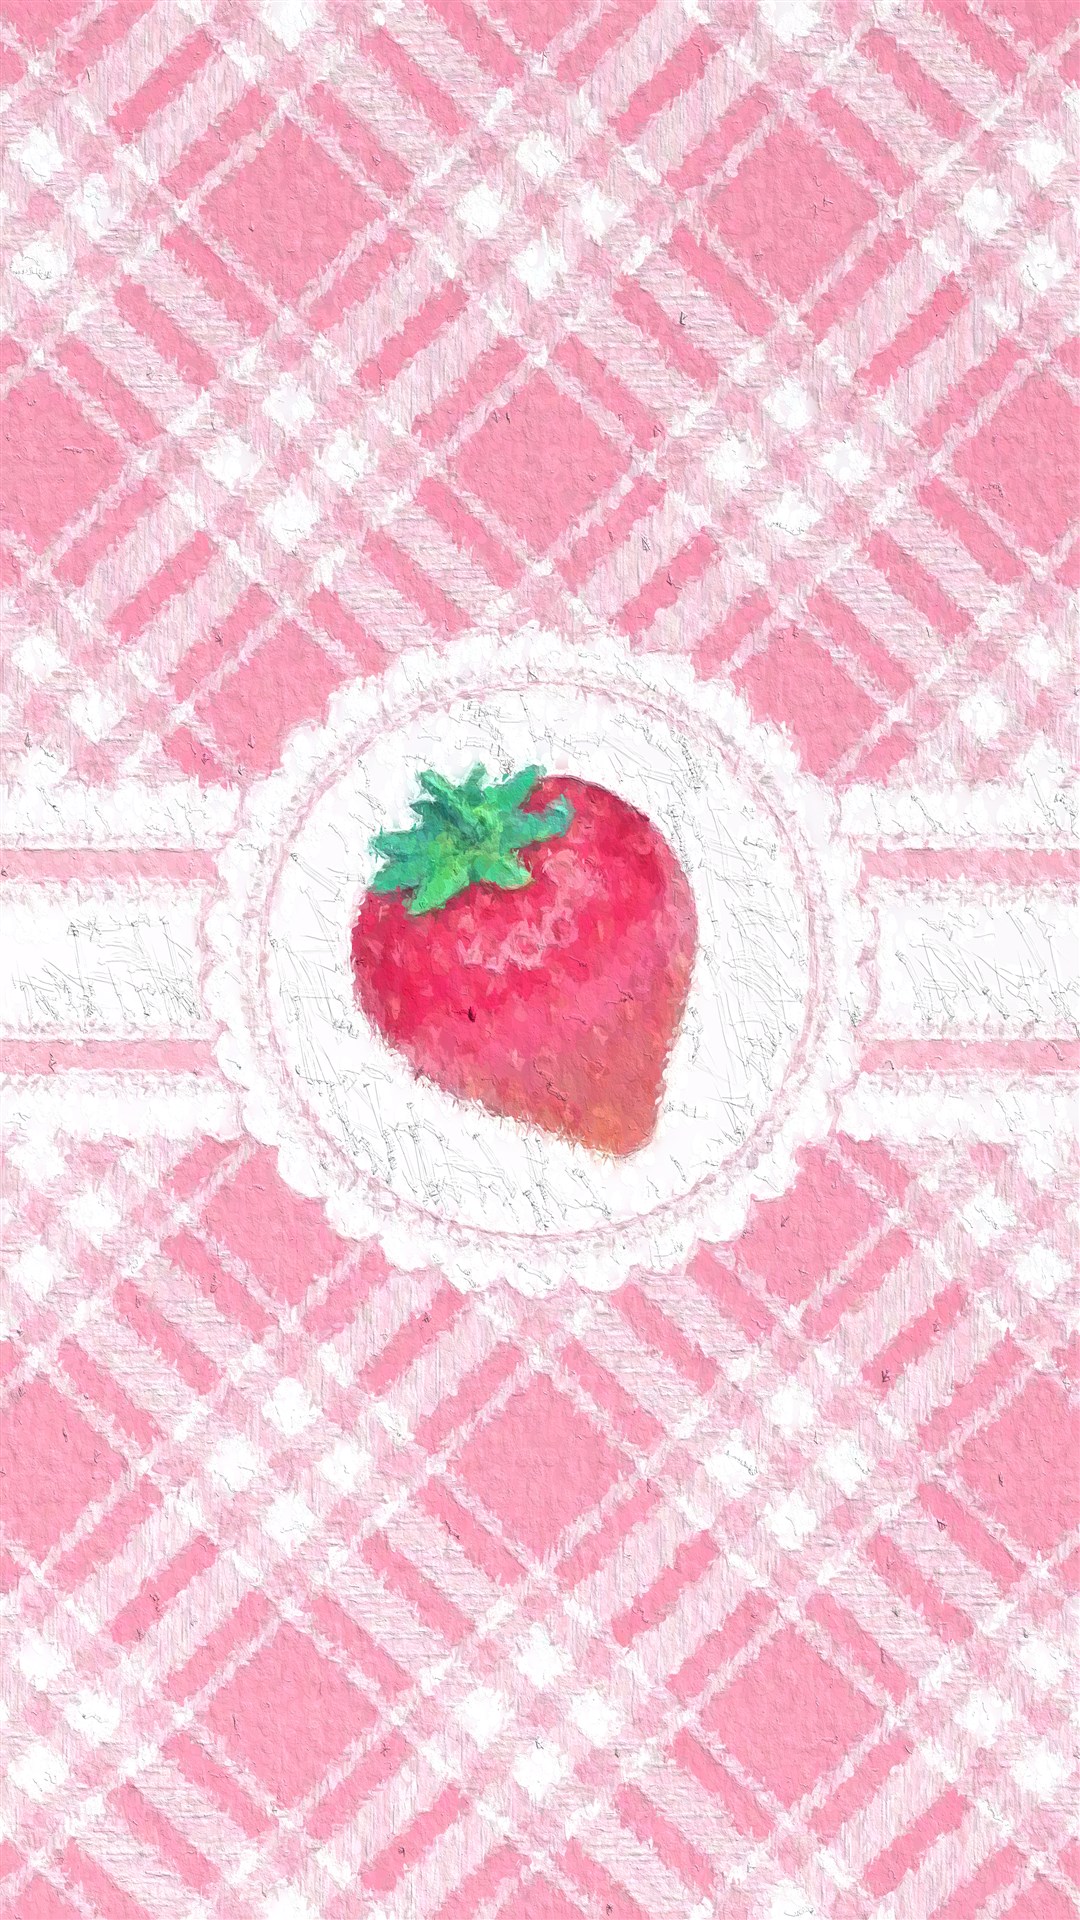 少女心草莓图案平铺壁纸,浪漫的粉红色,无法抵挡的甜美